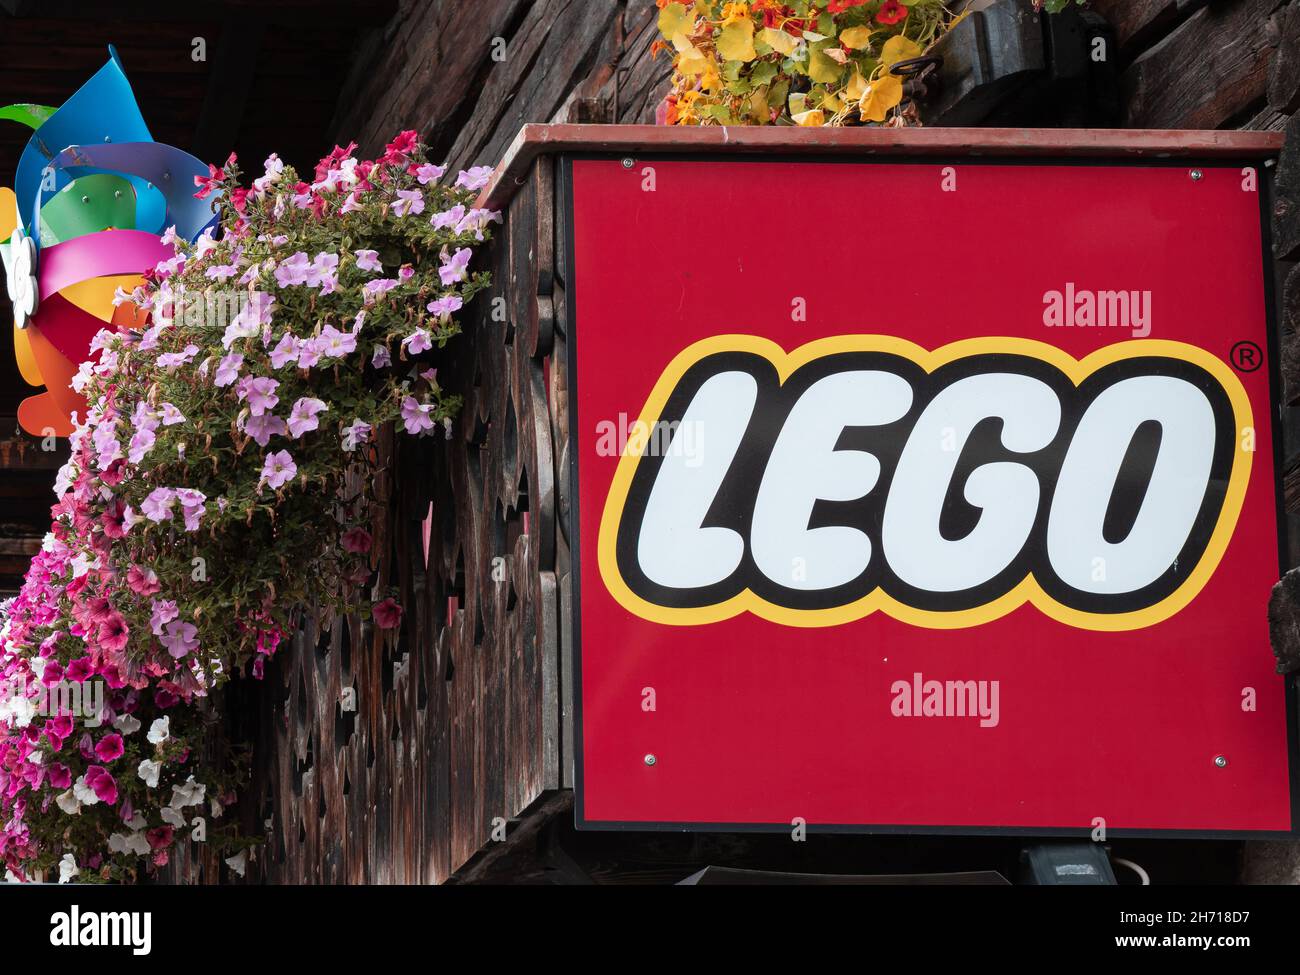 Livigno, Italie - 29 septembre 2021 : un magasin de Lego, une gamme de jouets de construction en plastique fabriqués par le Groupe Lego, une société privée Banque D'Images